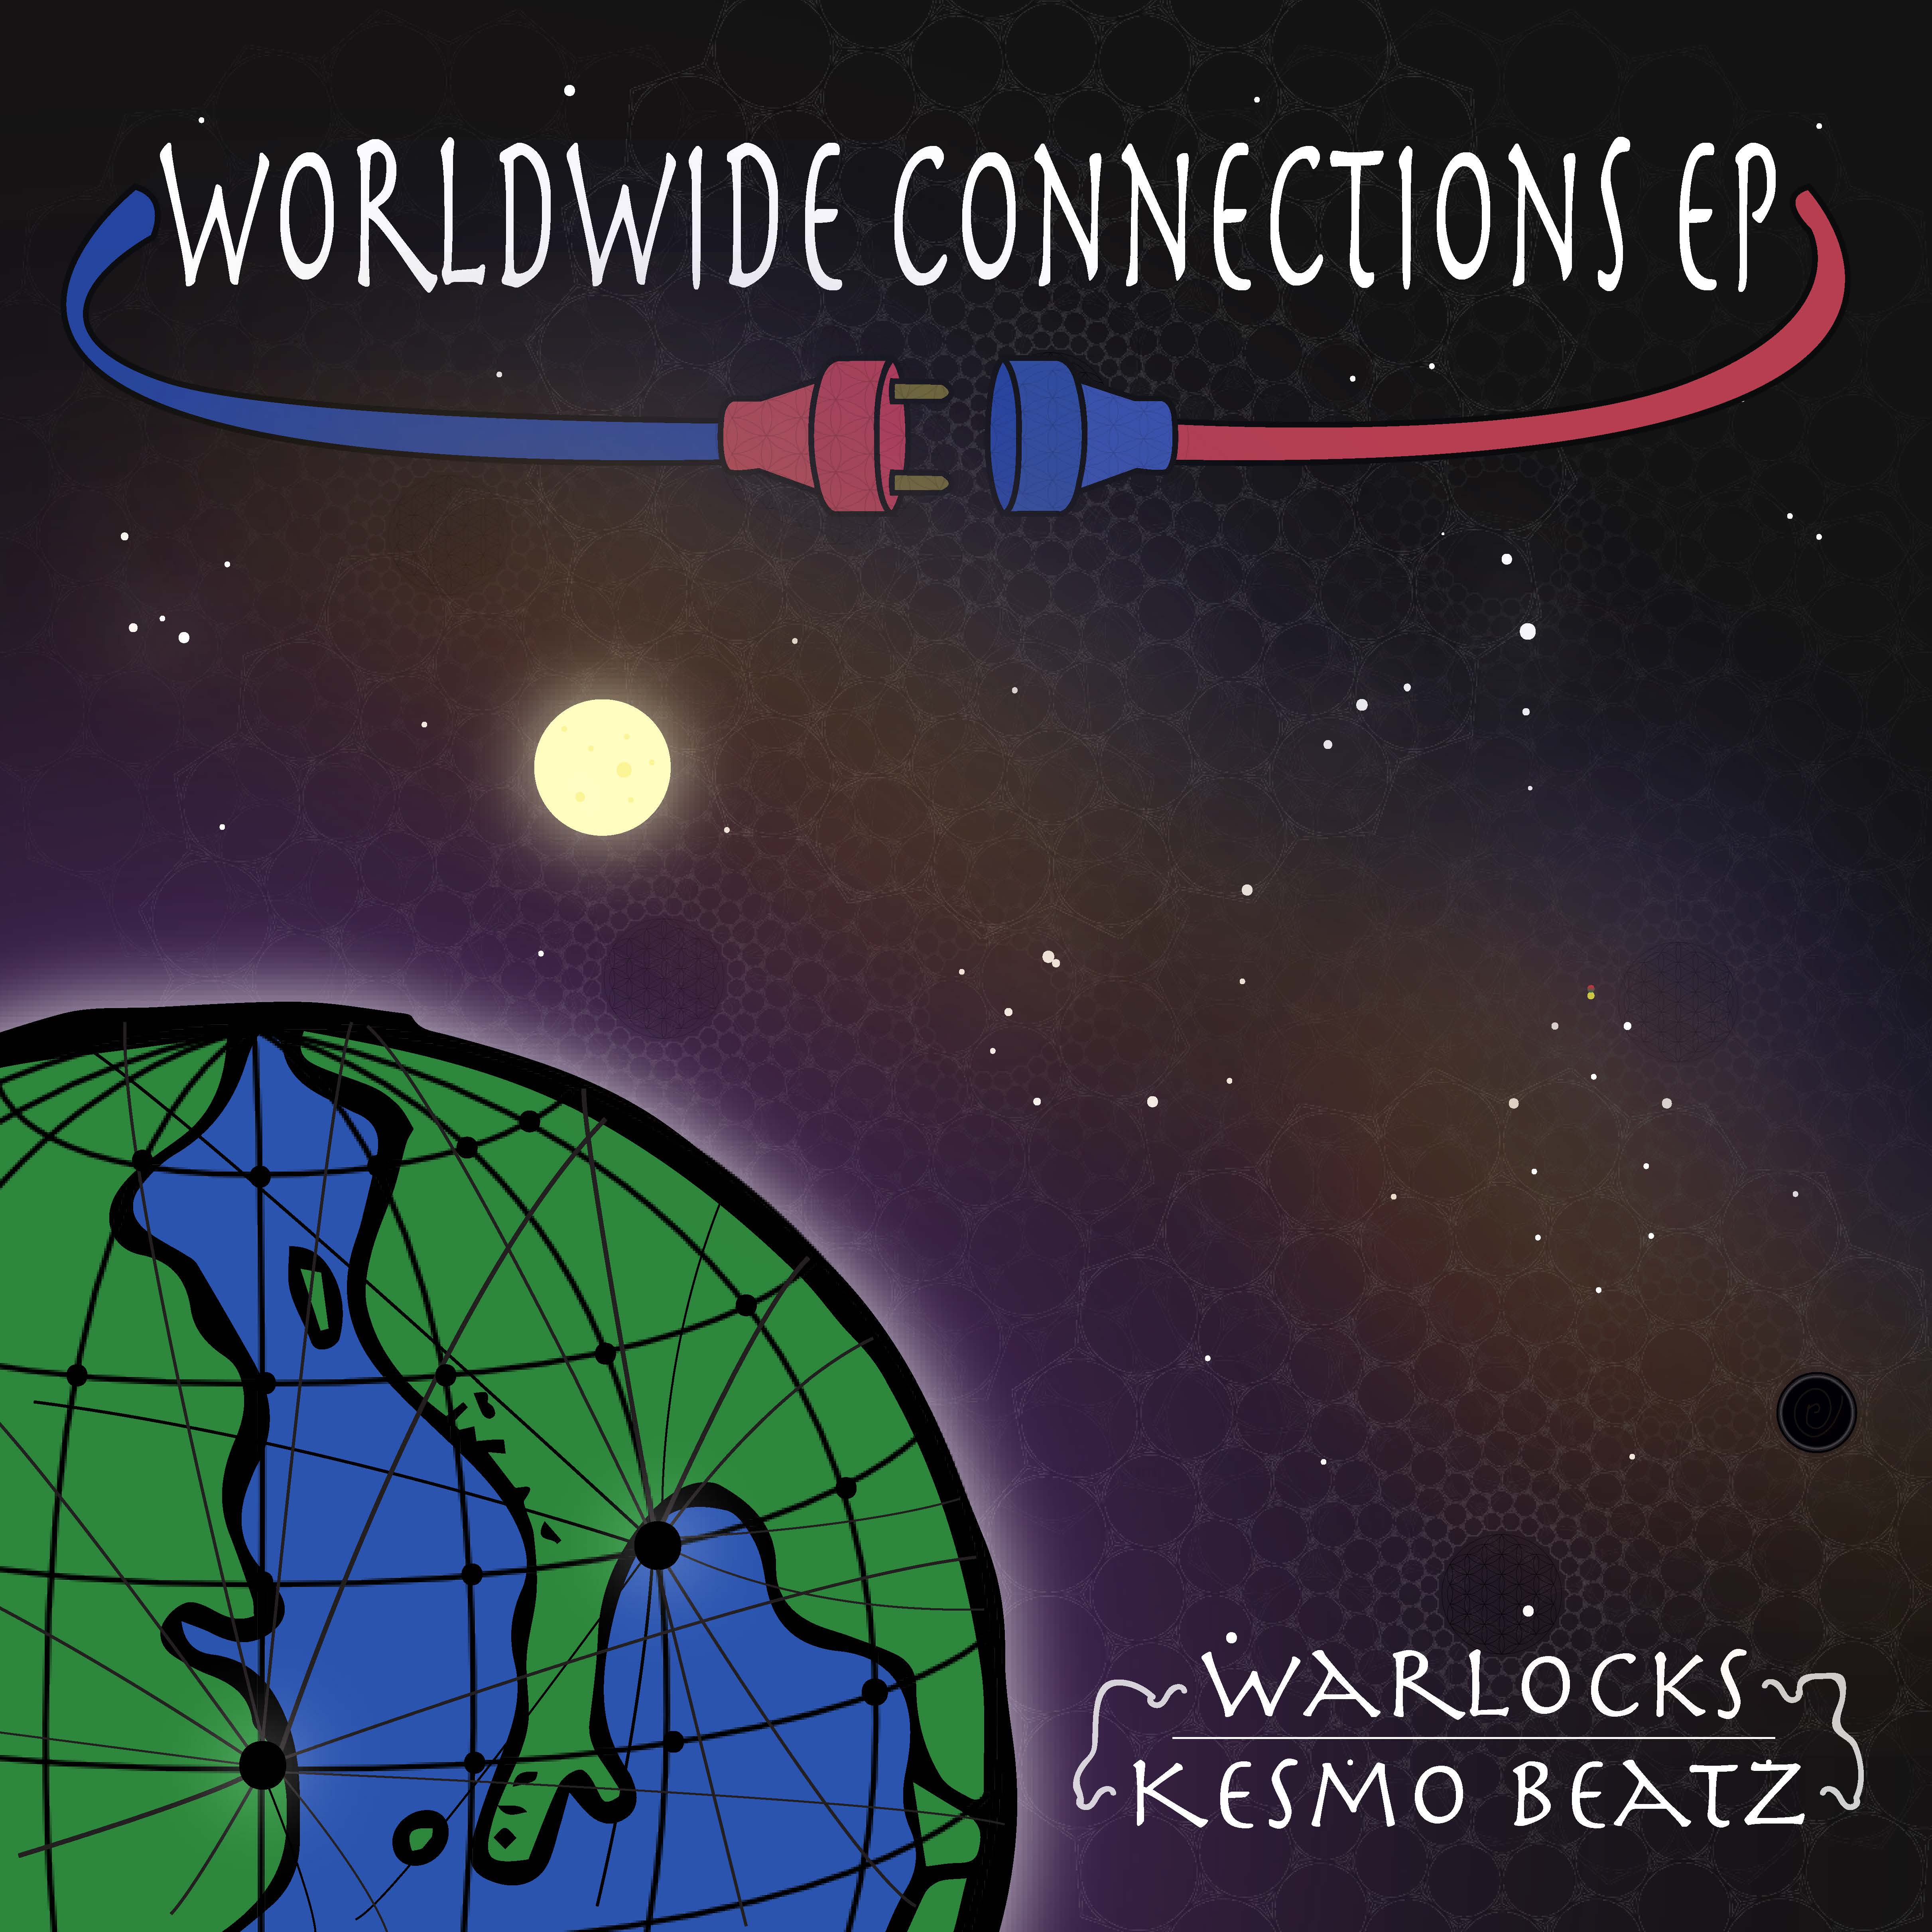 Warlocks - "Worldwide Connections" (Release) | @WARLOCKS_CNA